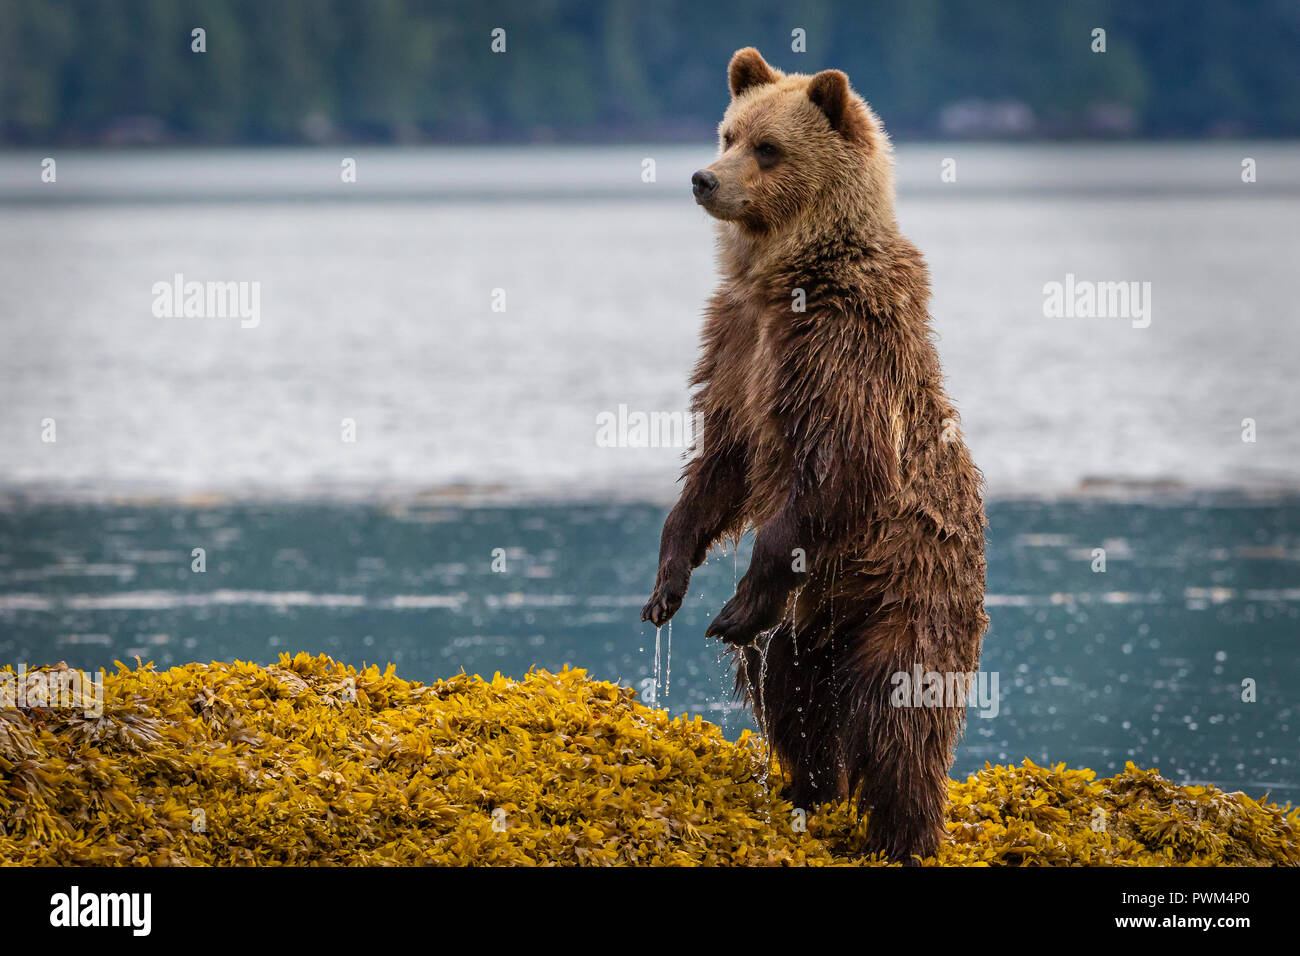 Carino grizzly Bear Cub in piedi in cerca di alghe marine per la mamma lungo il litorale in ingresso del cavaliere con la bassa marea, Prime Nazioni Territorio, British Columb Foto Stock